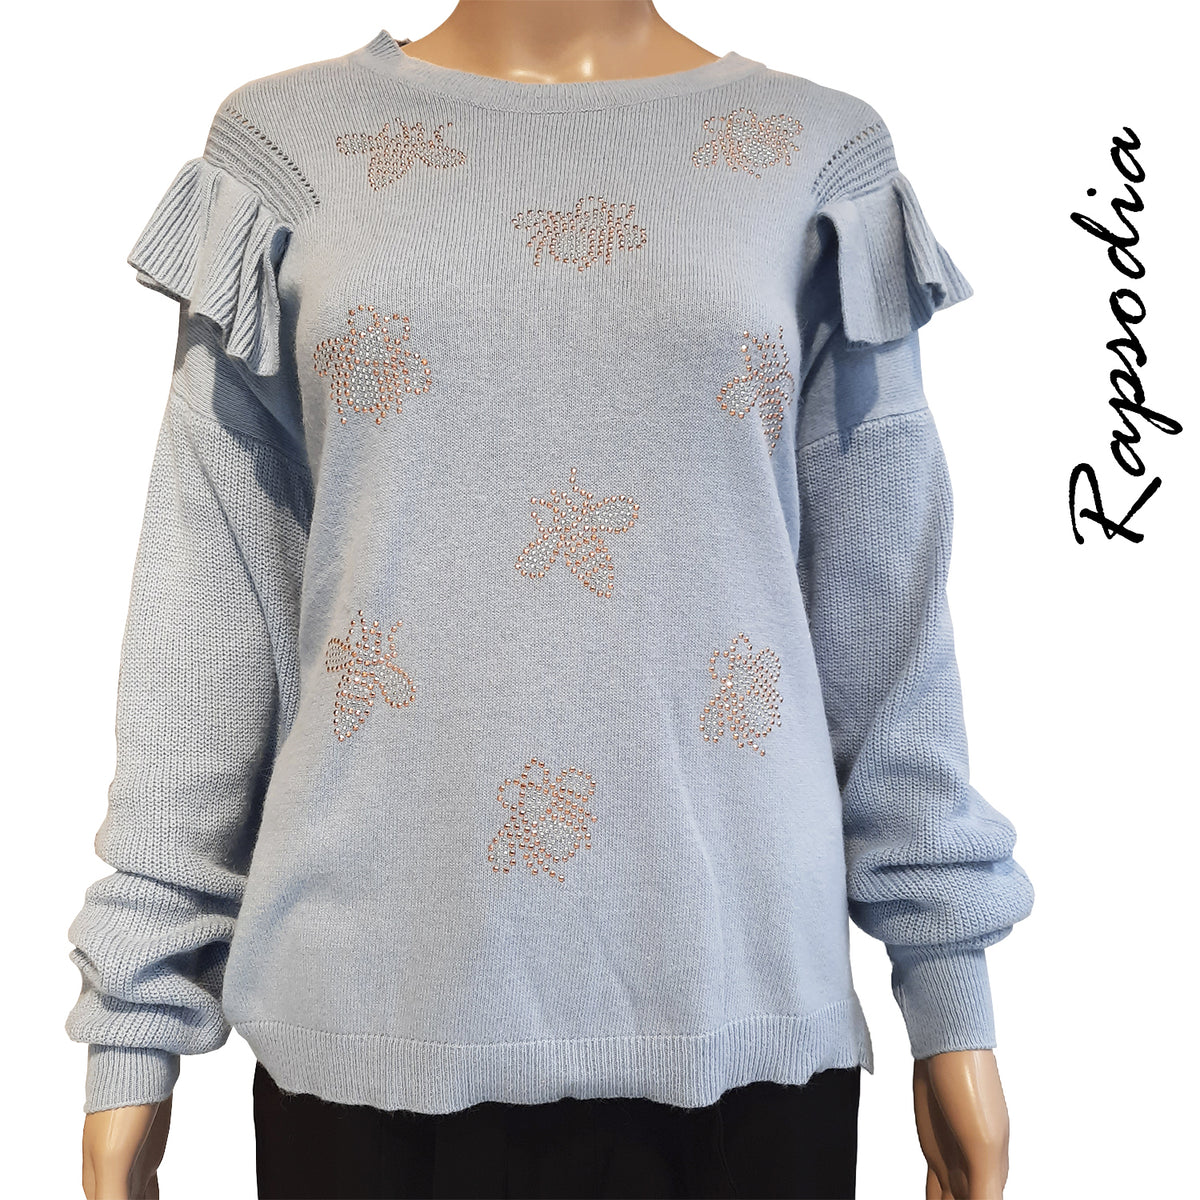 Sweater Rapsodia Lizzi Celeste